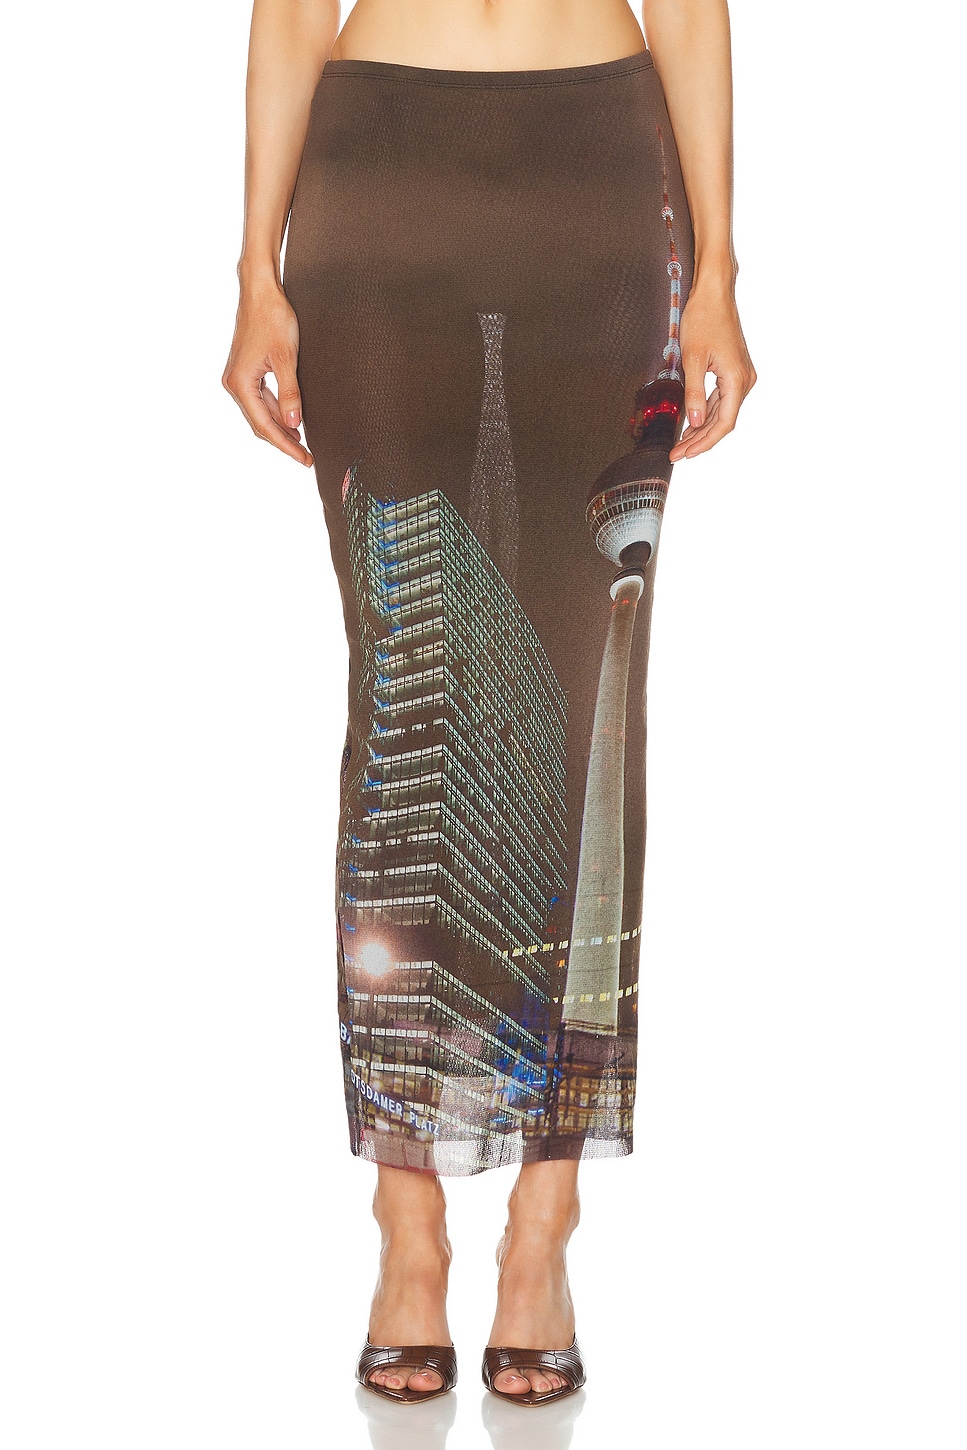 X Shayne Oliver Mesh City Long Skirt in Brown